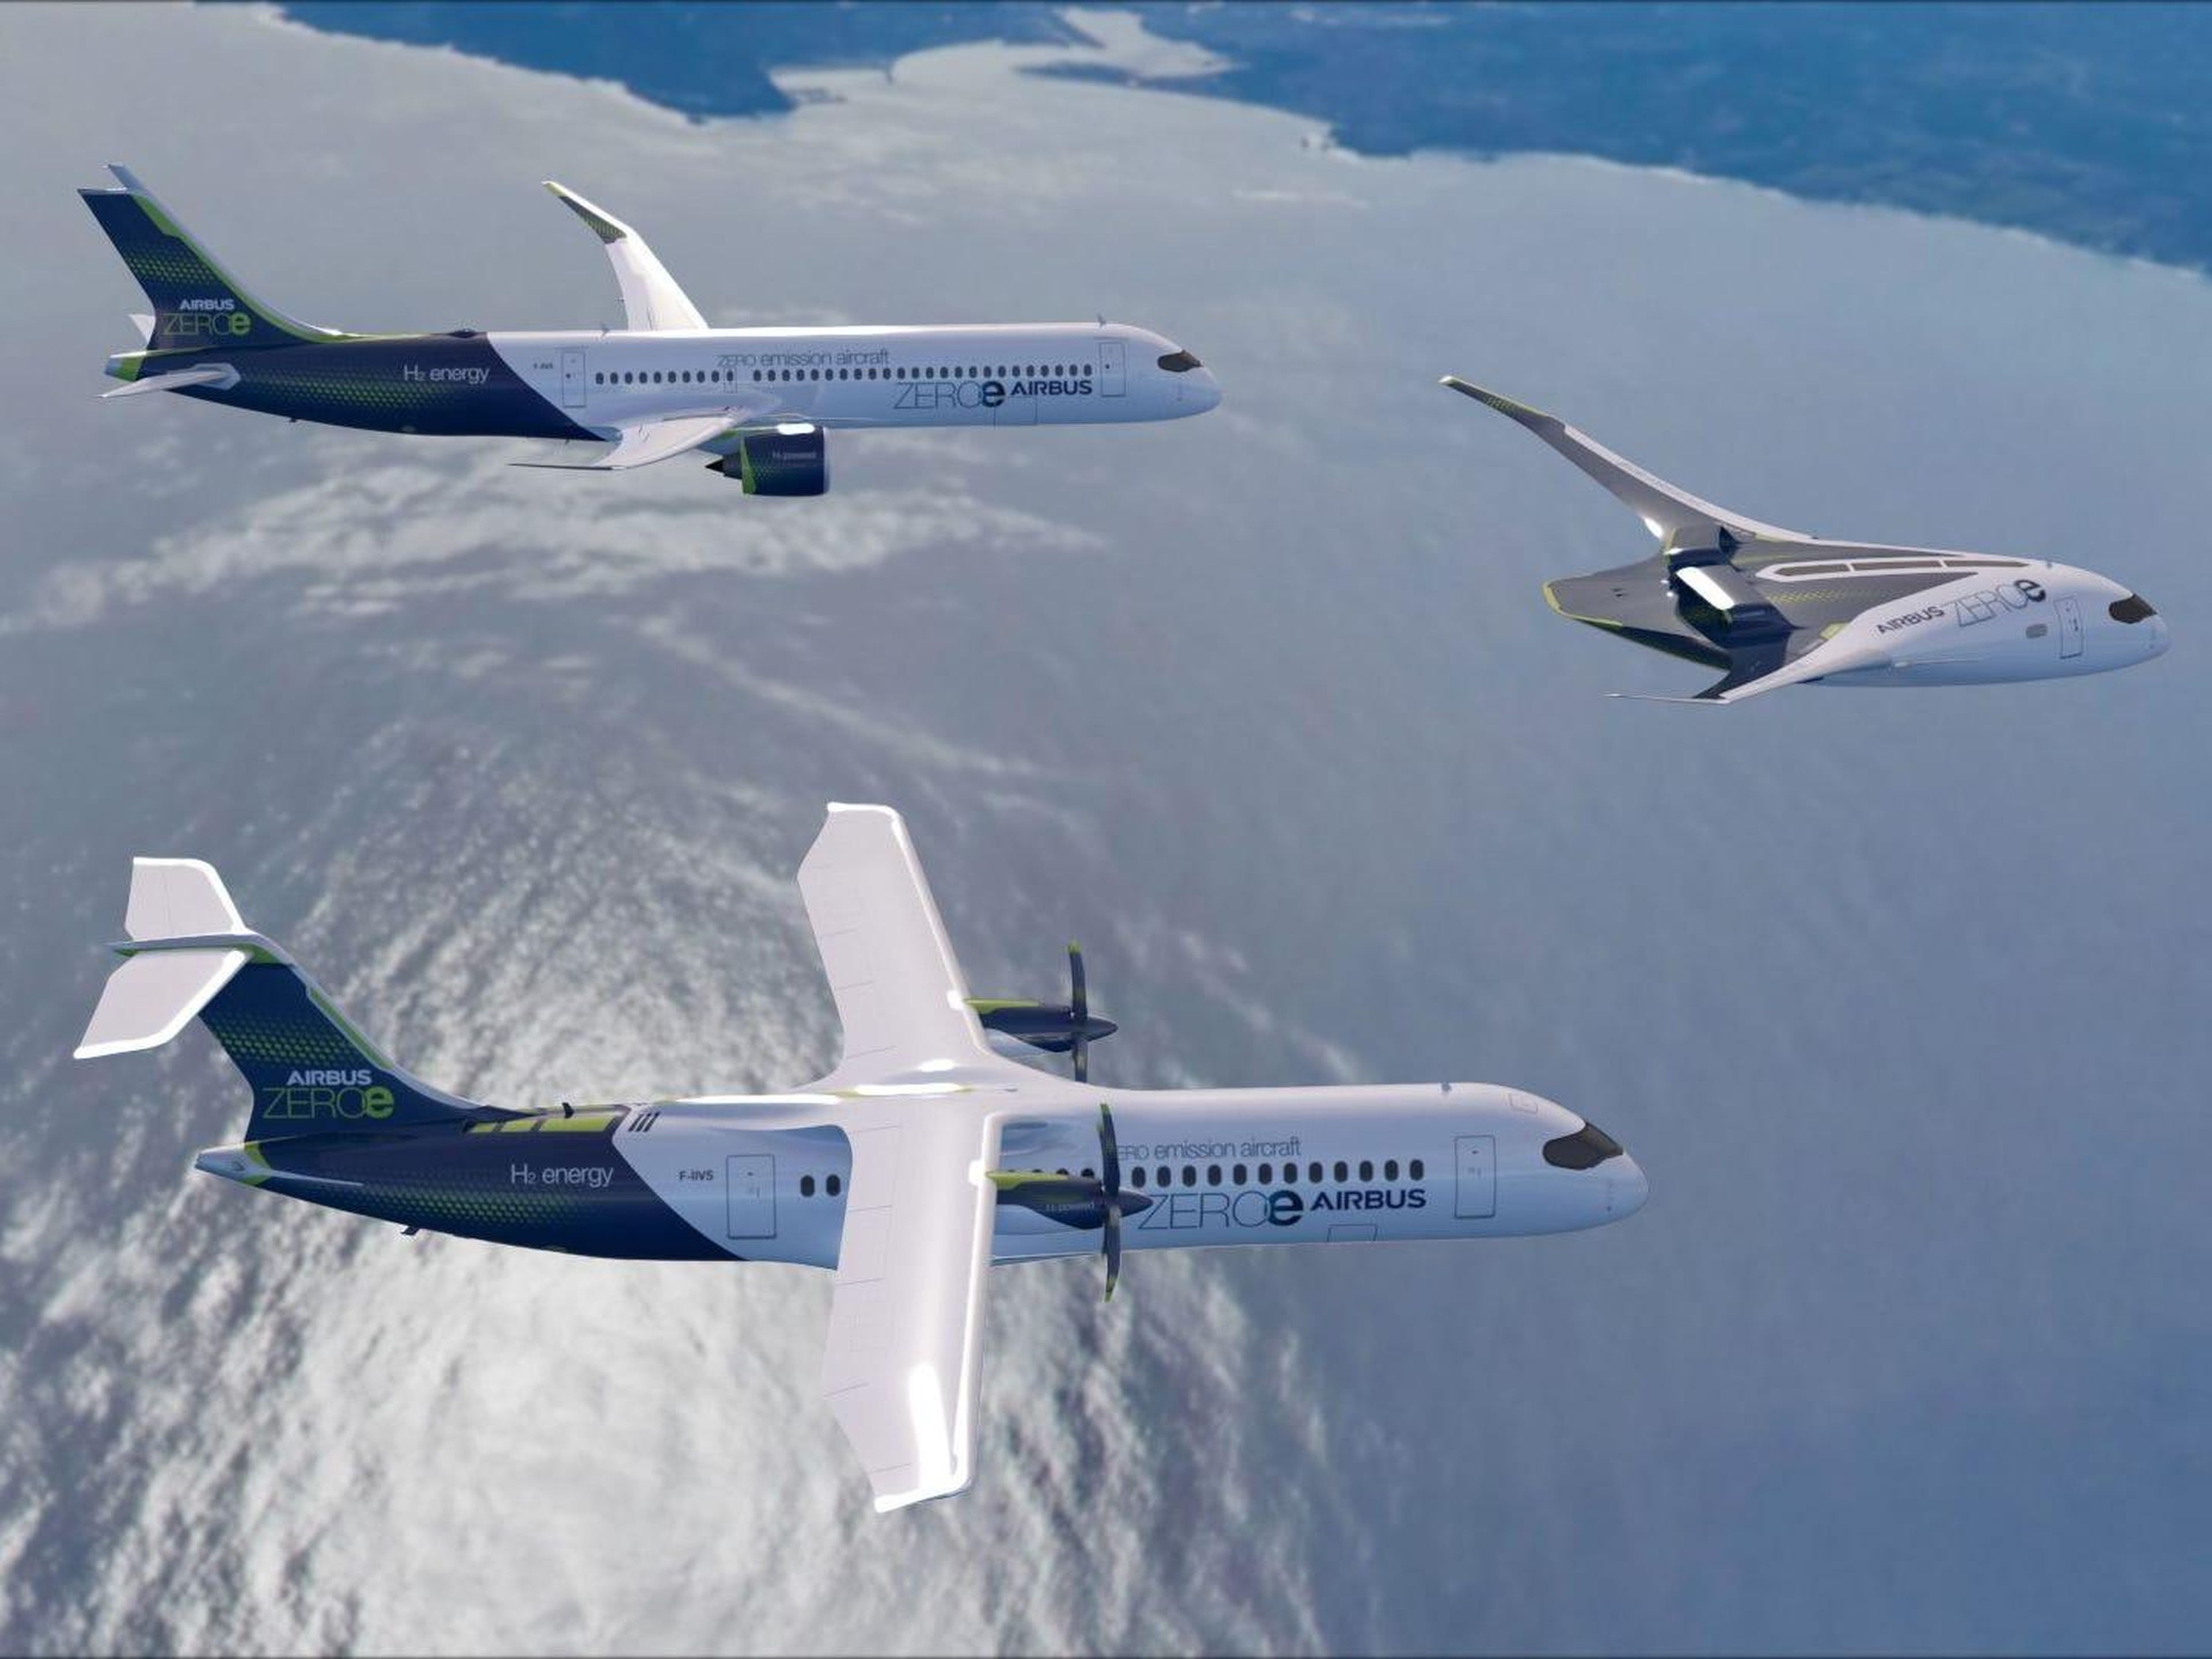 Airbus' new zero-emission aircraft fleet. Airbus